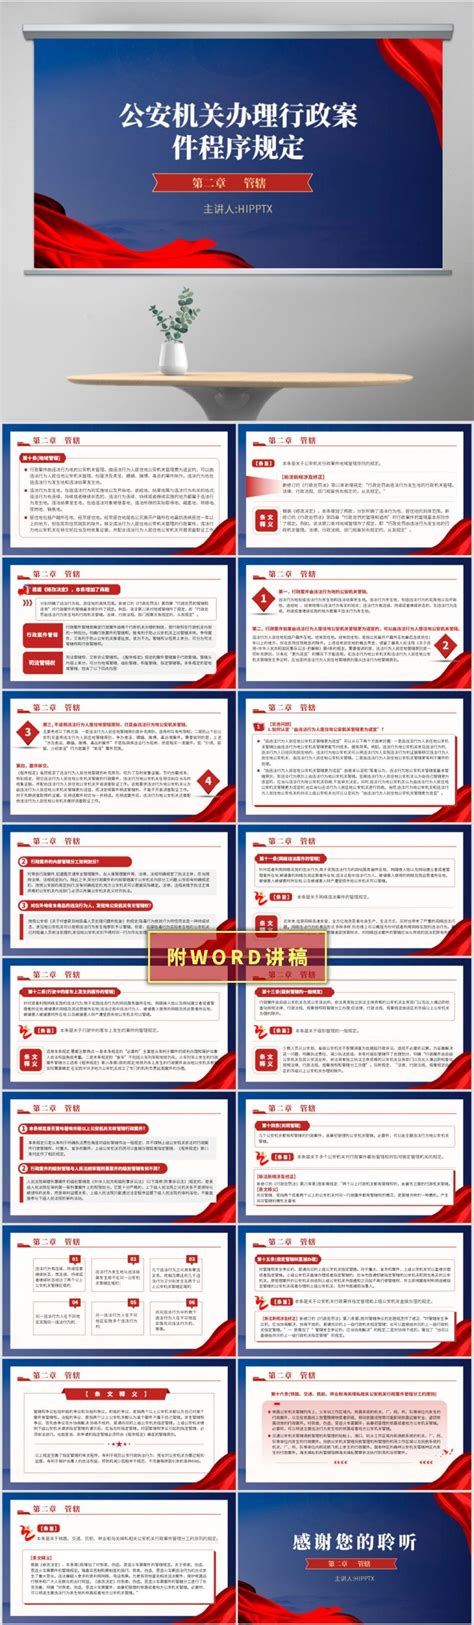 浙江省行政区域划分简表_word文档在线阅读与下载_文档网